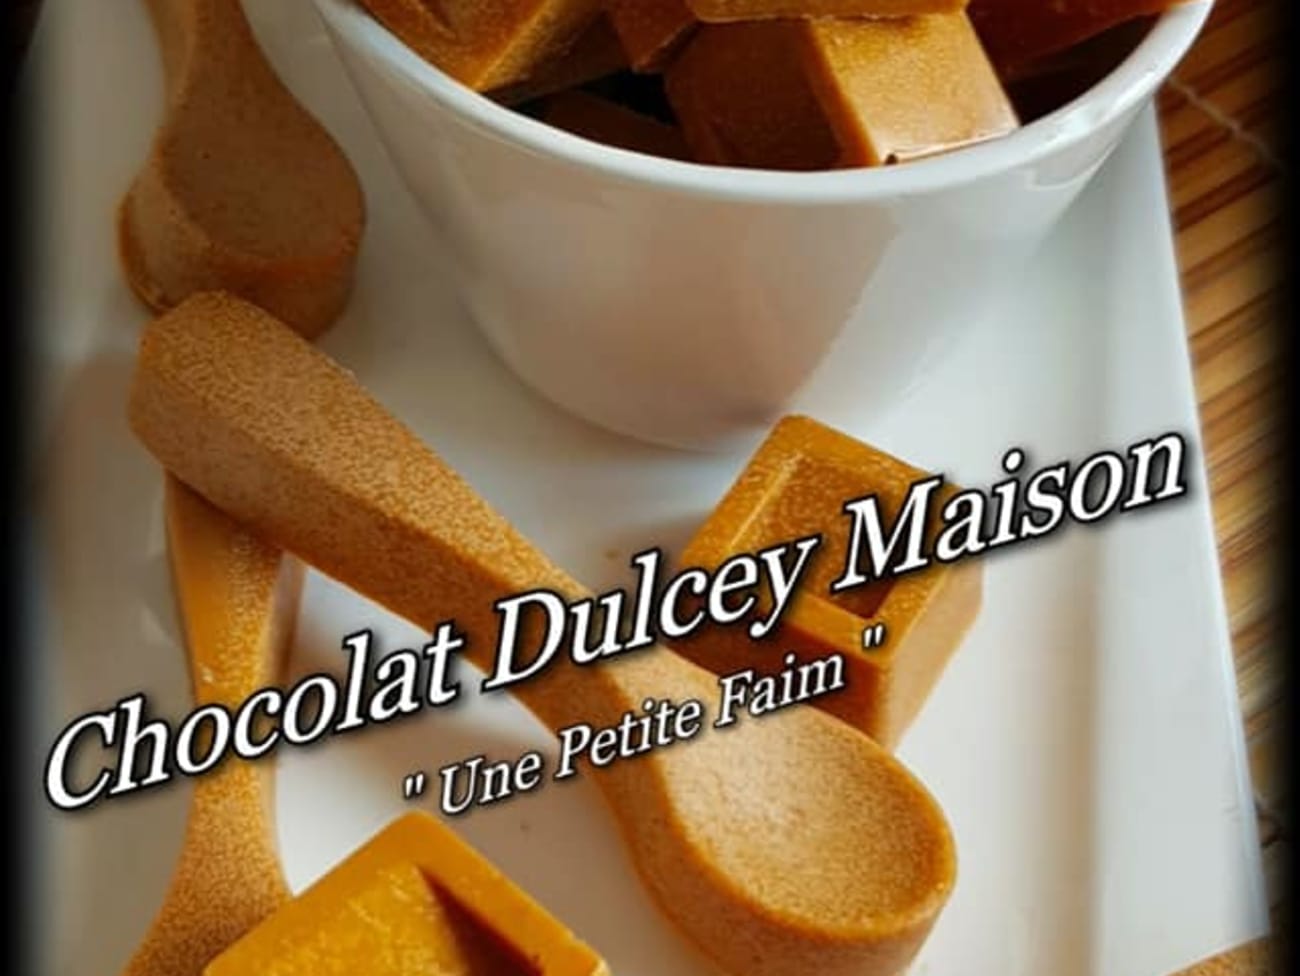 Chocolat Dulcey maison